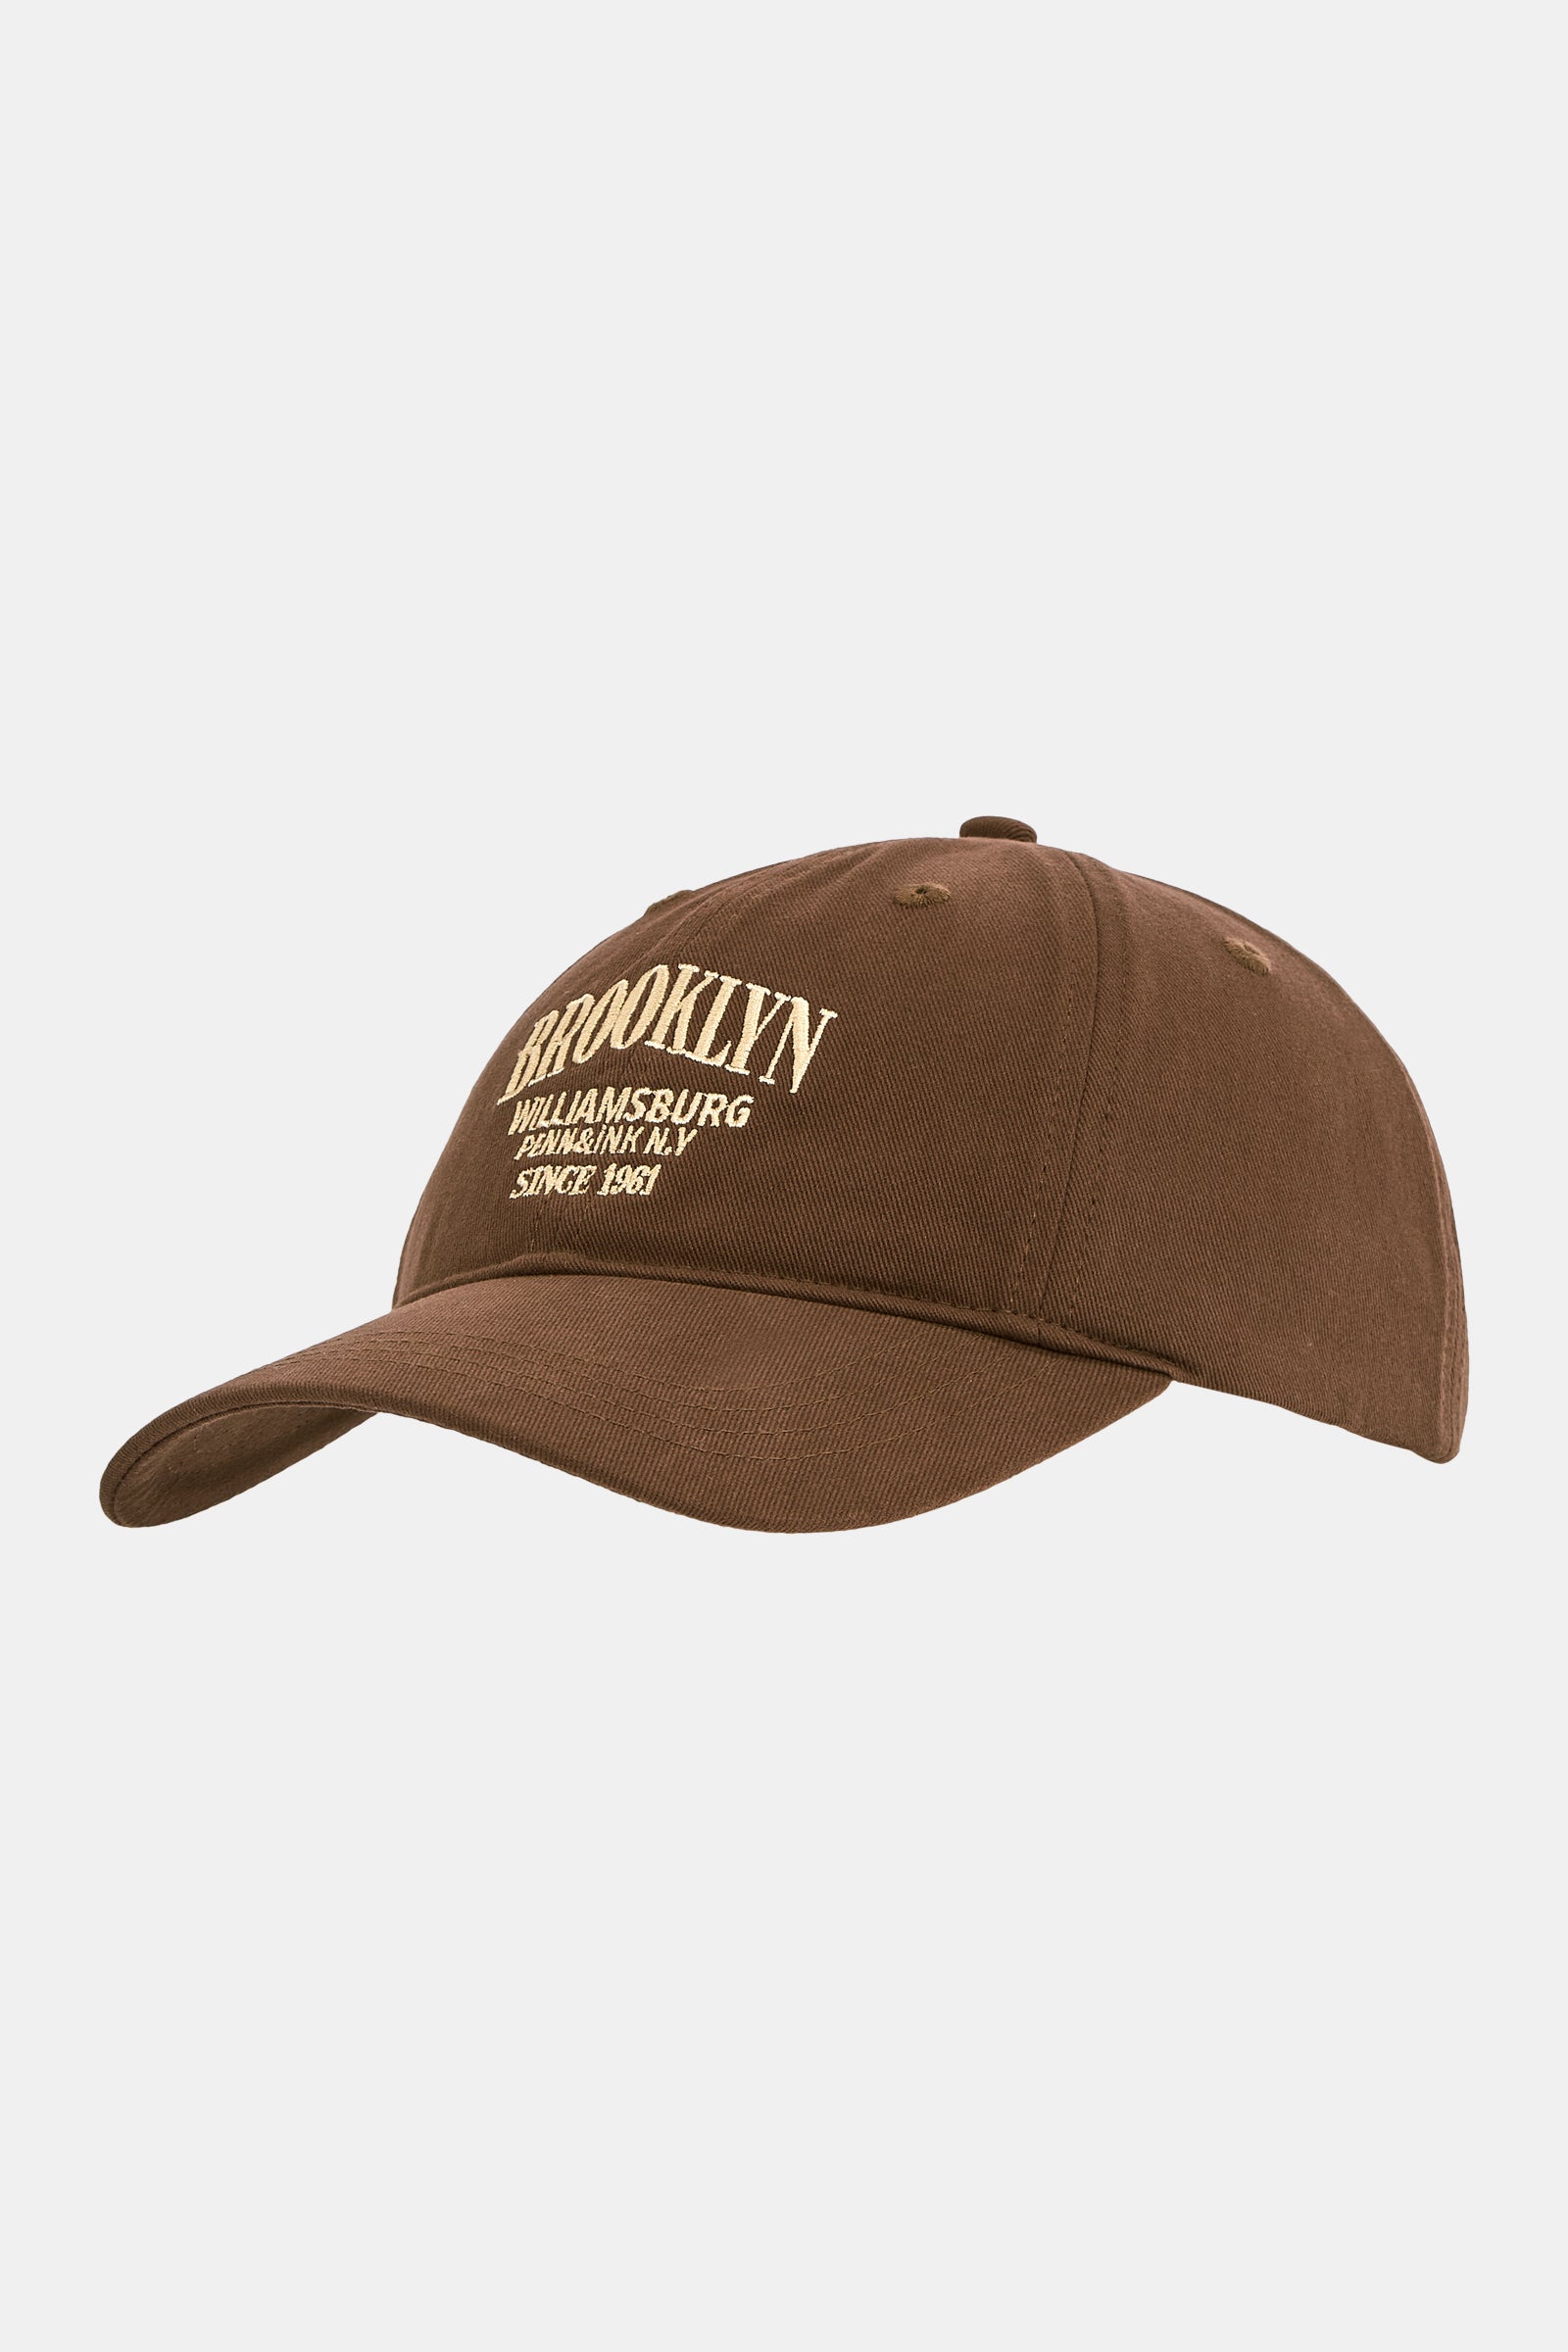 CAP (WILLIAM) BROWN - ECRU